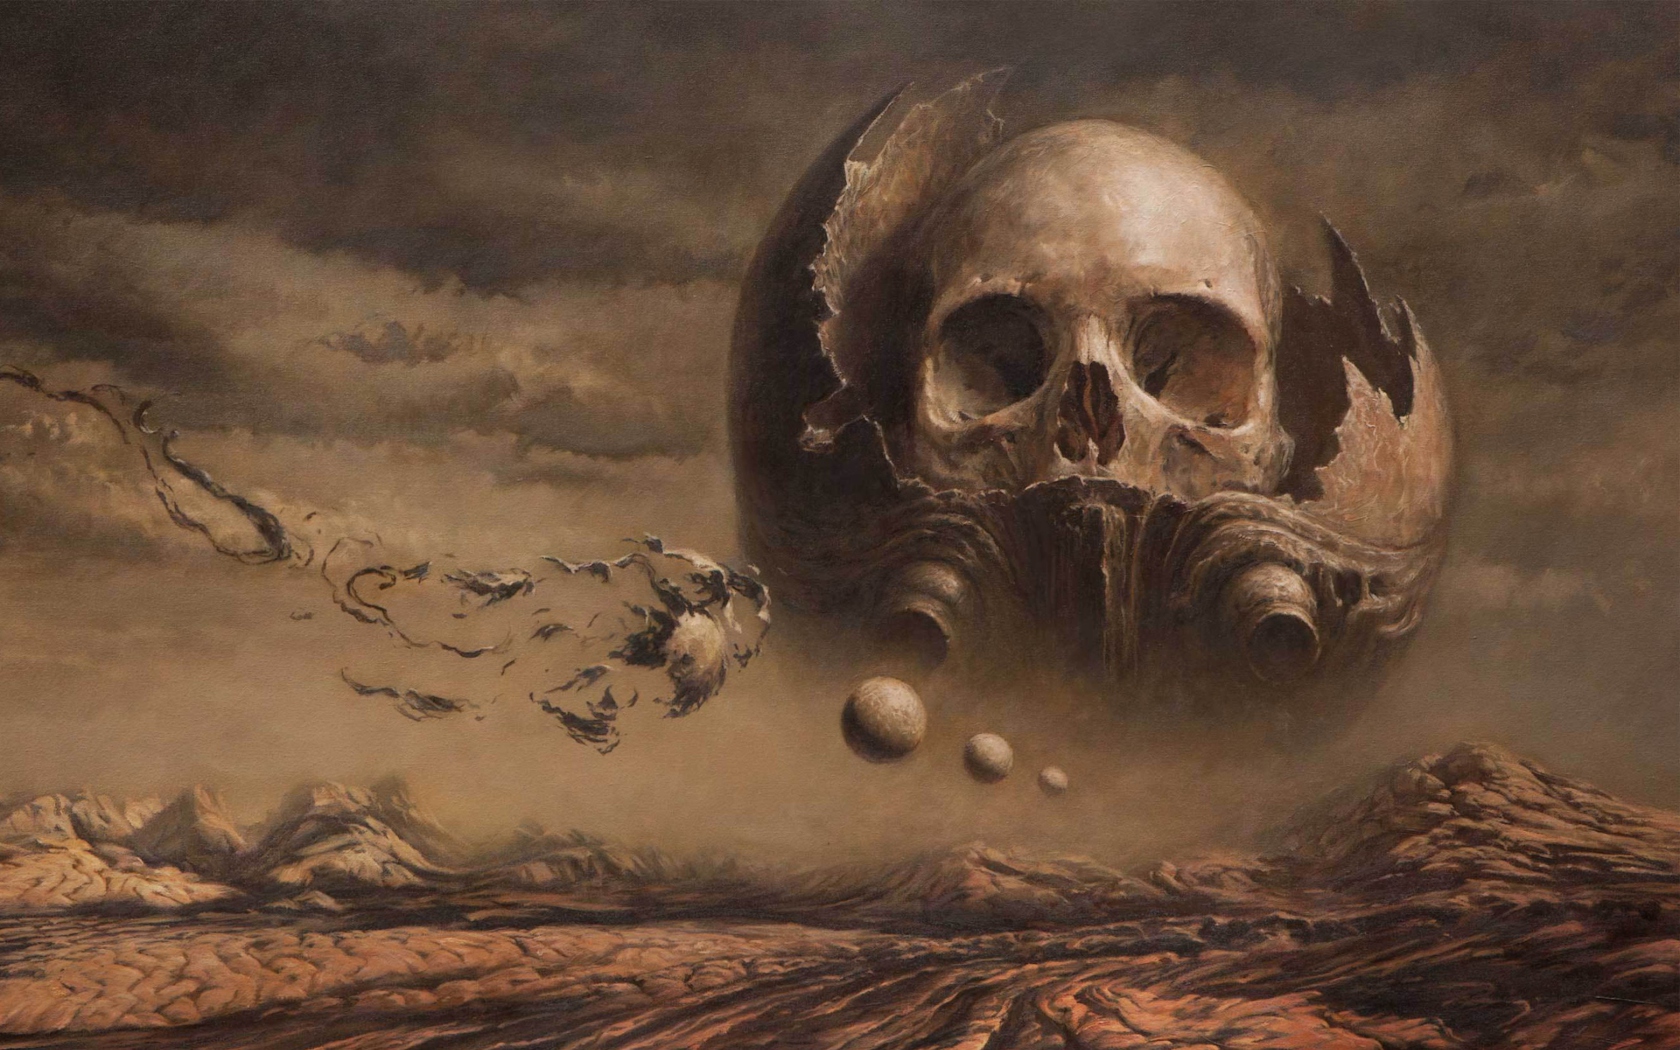 Das Skull Desert Wallpaper 1680x1050